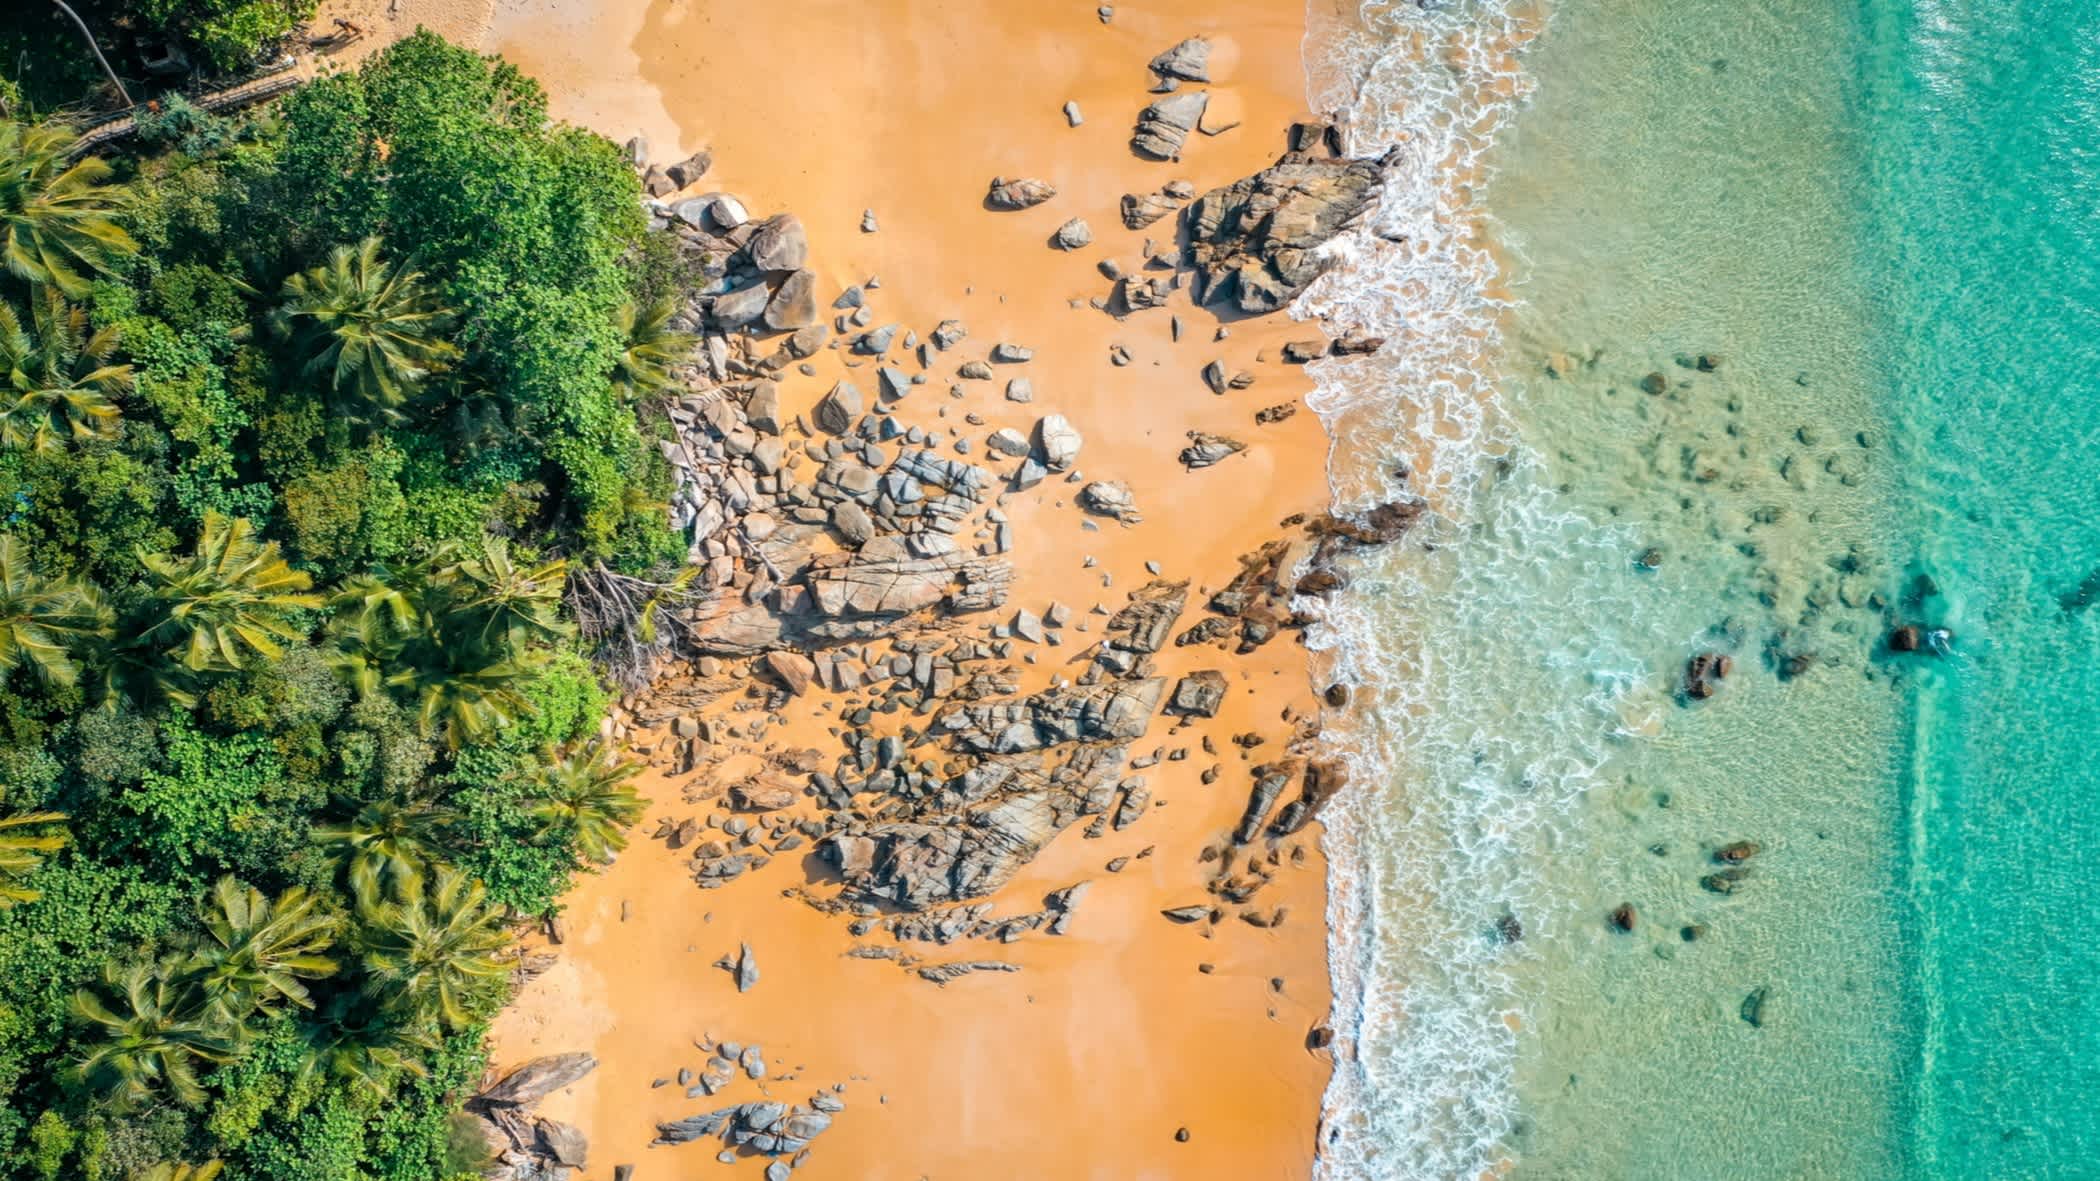 Vue aérienne de Nai Thon Beach avec ses arbres tropicaux, son sable doré, ses rochers et ses eaux turquoises, à Phuket en Thaïlande